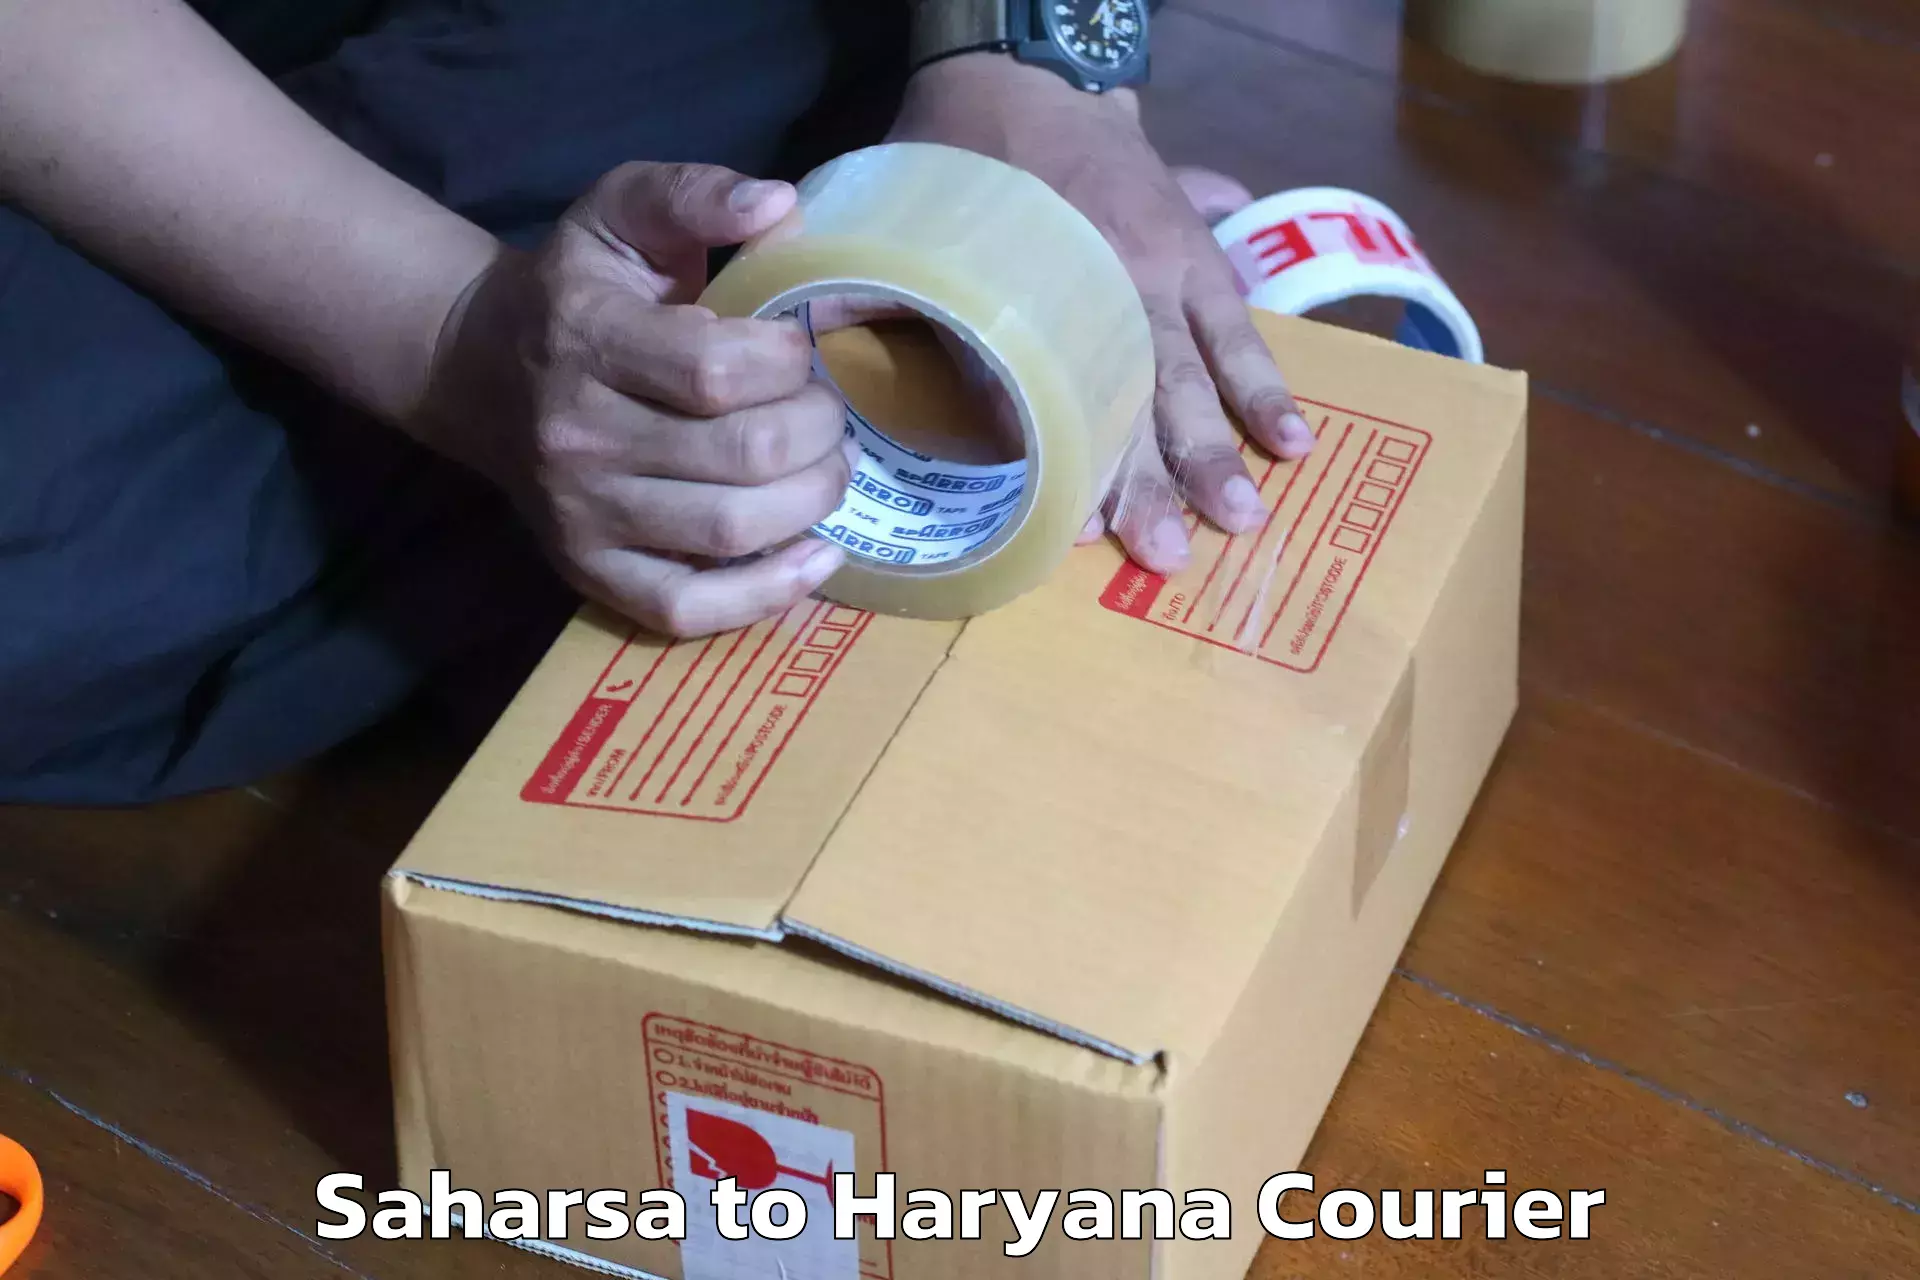 Efficient moving company Saharsa to Ambala